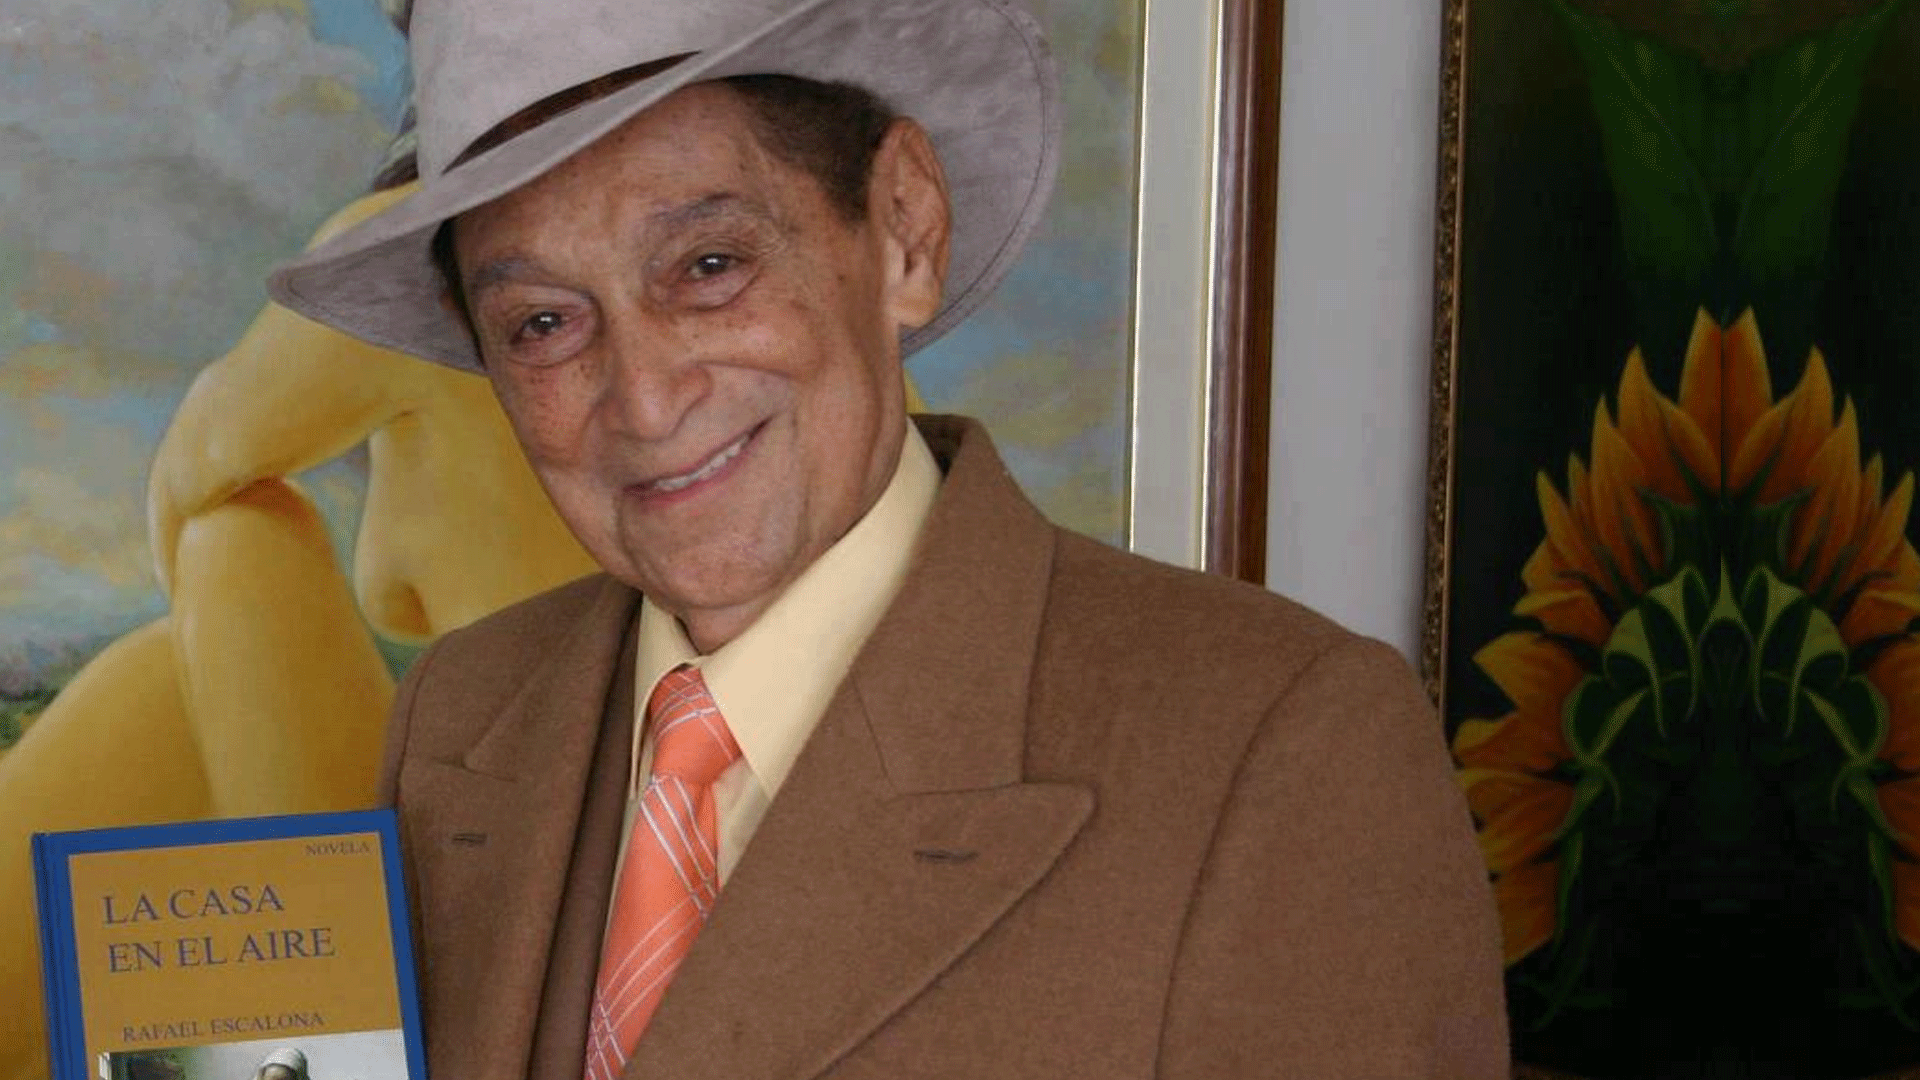 Rafael Escalona, el juglar más famoso del vallenato